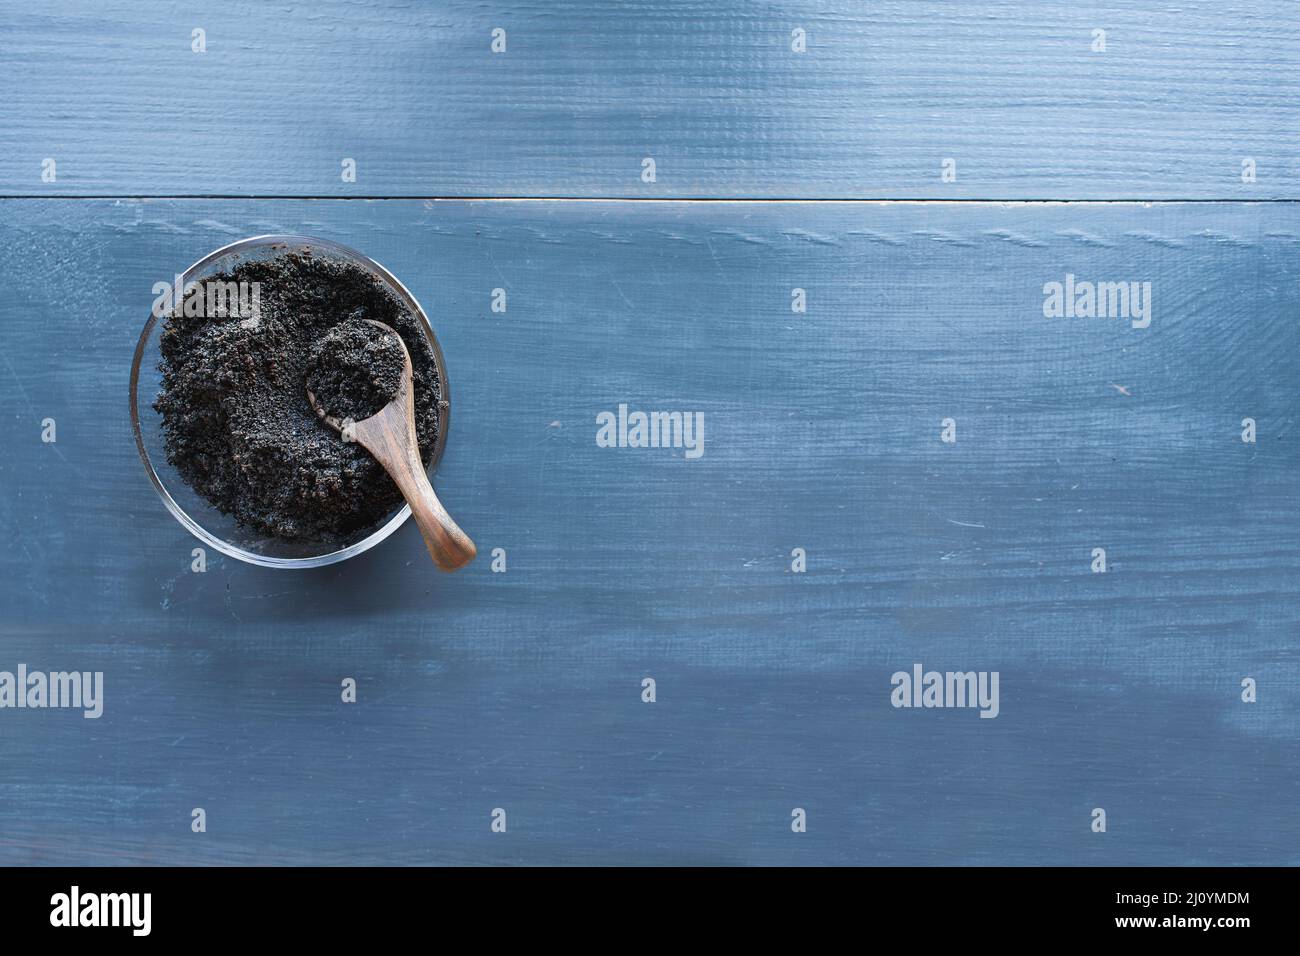 Vista de la mesa de los posos de café en un tazón de vidrio con cuchara de madera sobre un fondo de madera rústica azul oscuro. Forma orgánica sostenible de fertilizar Foto de stock